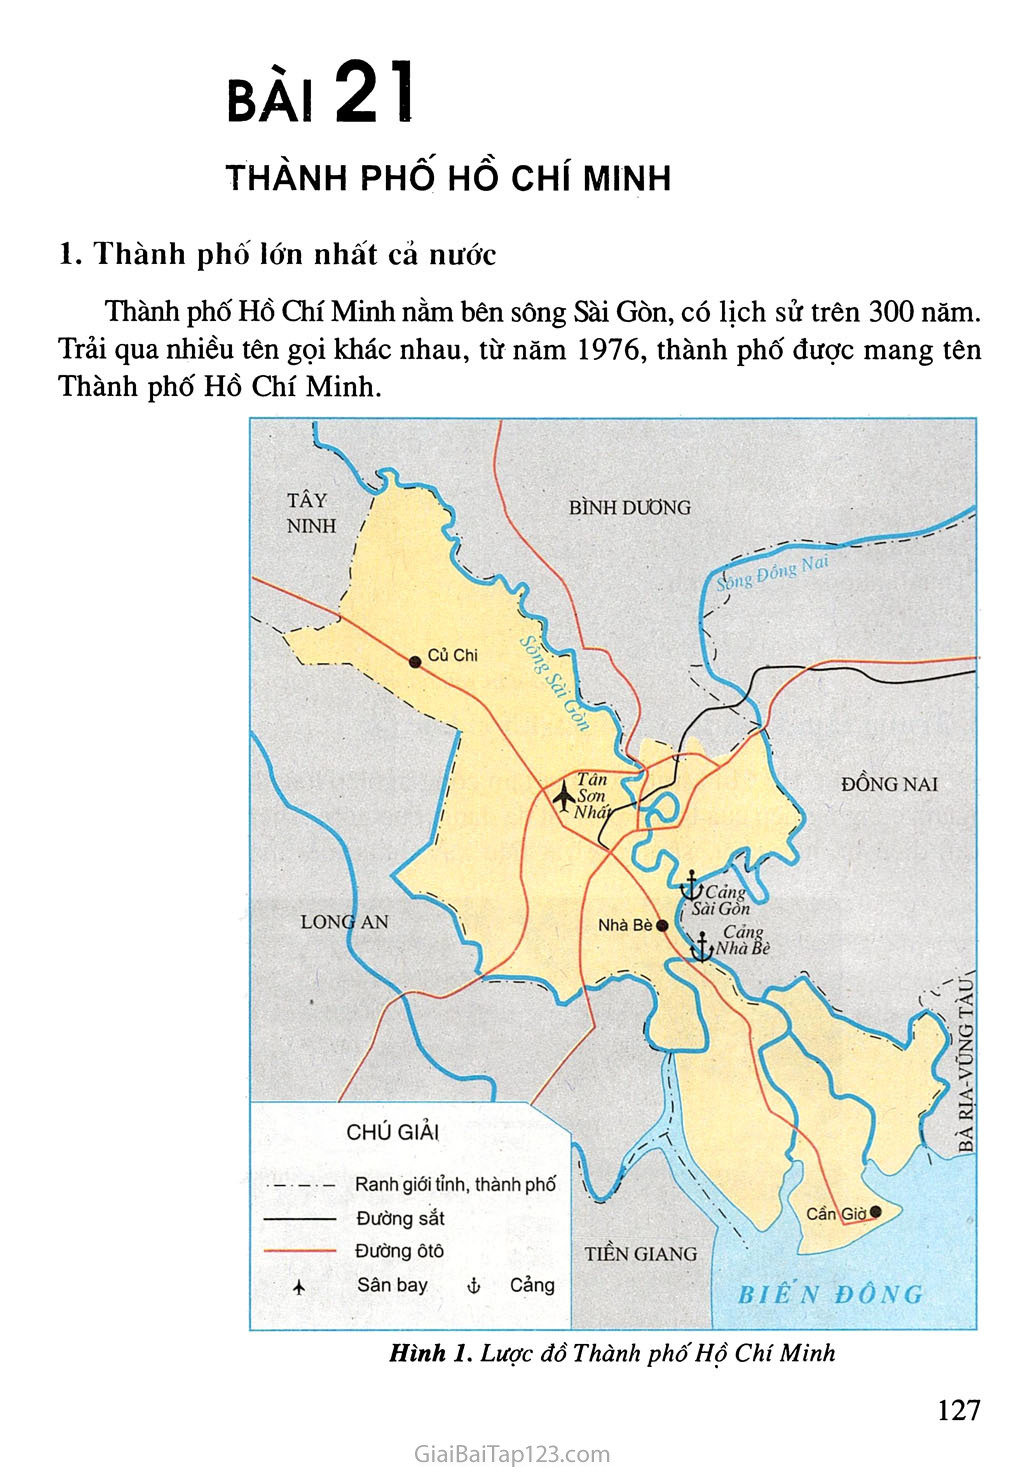 Bài 21. Thành phố Hồ Chí Minh trang 1